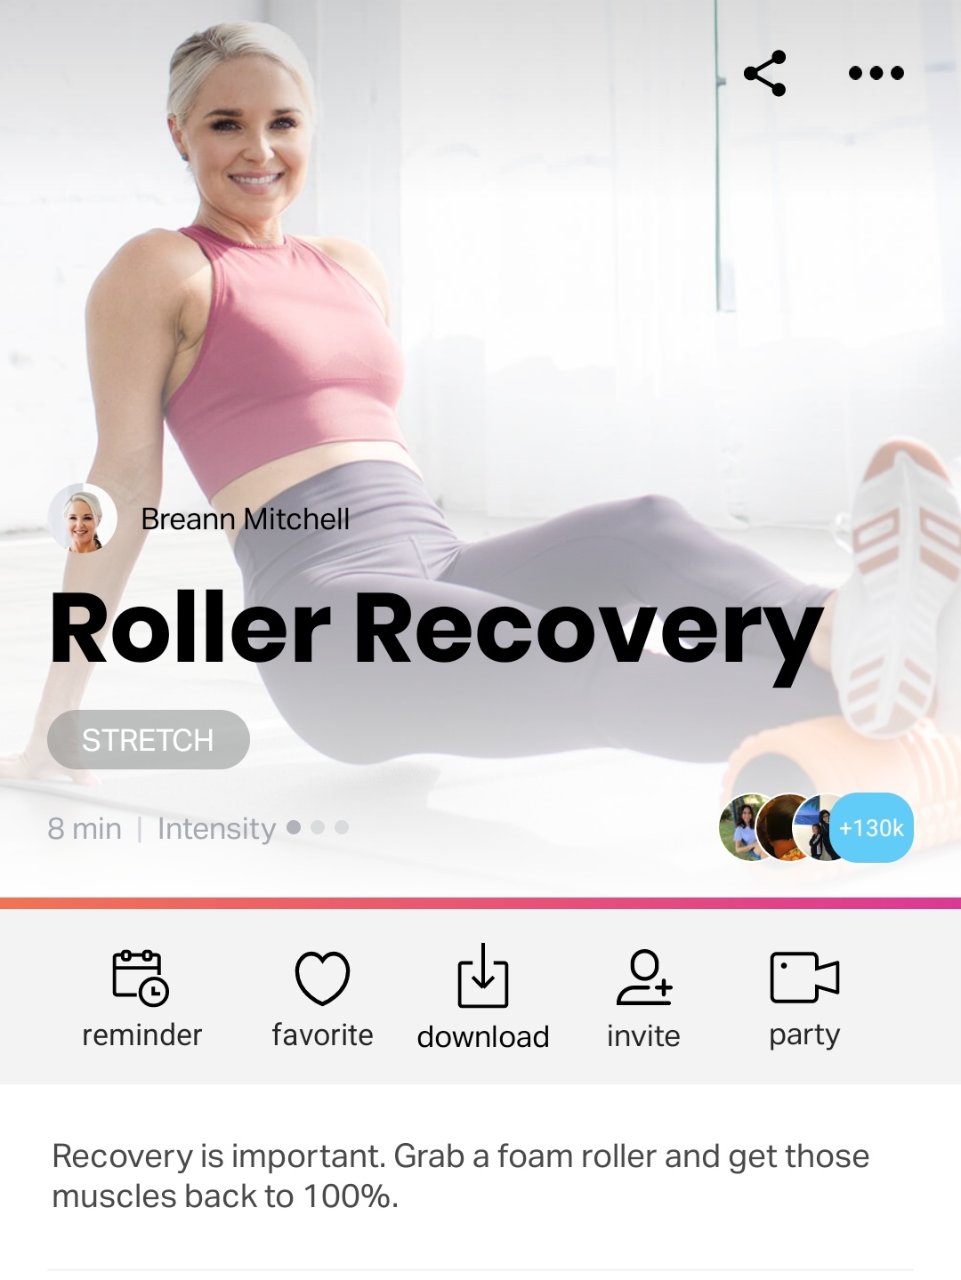 运动完记得用Roller来帮助肌肉恢复呀...